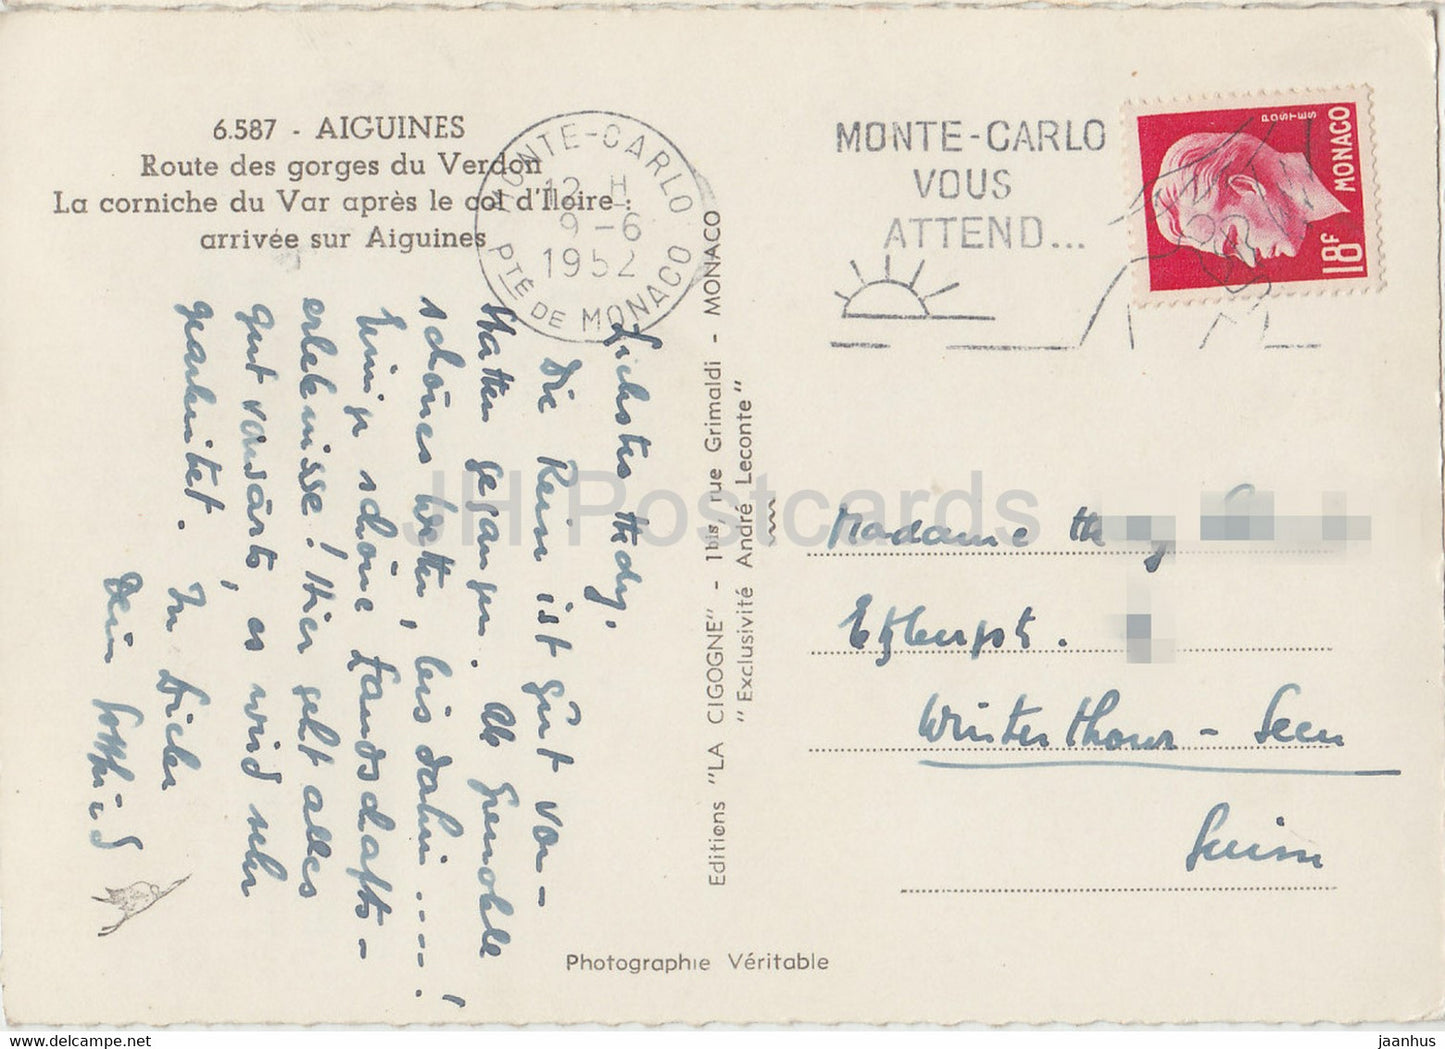 Aiguines - Route des gorges du Verdon - La corniche du Var après le col d'Iloire - carte postale ancienne - 1952 - France - occasion